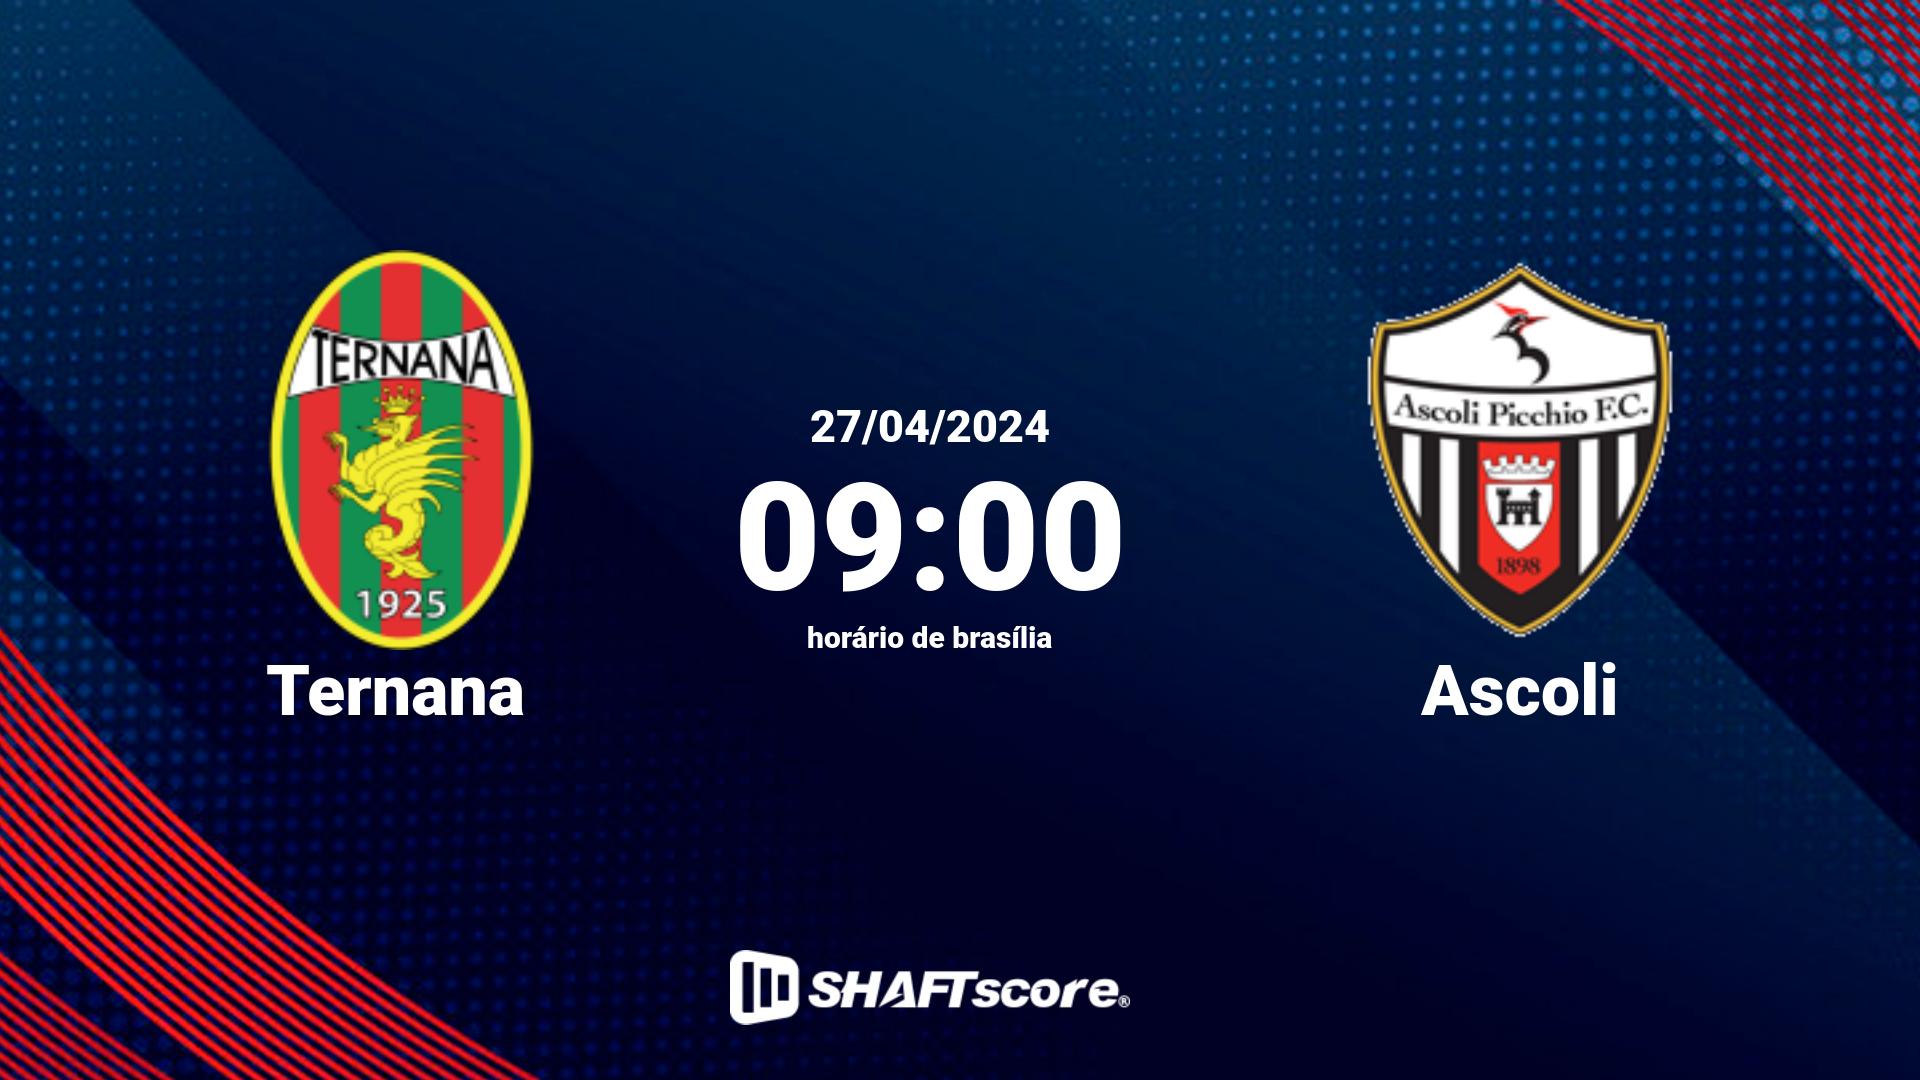 Estatísticas do jogo Ternana vs Ascoli 27.04 09:00